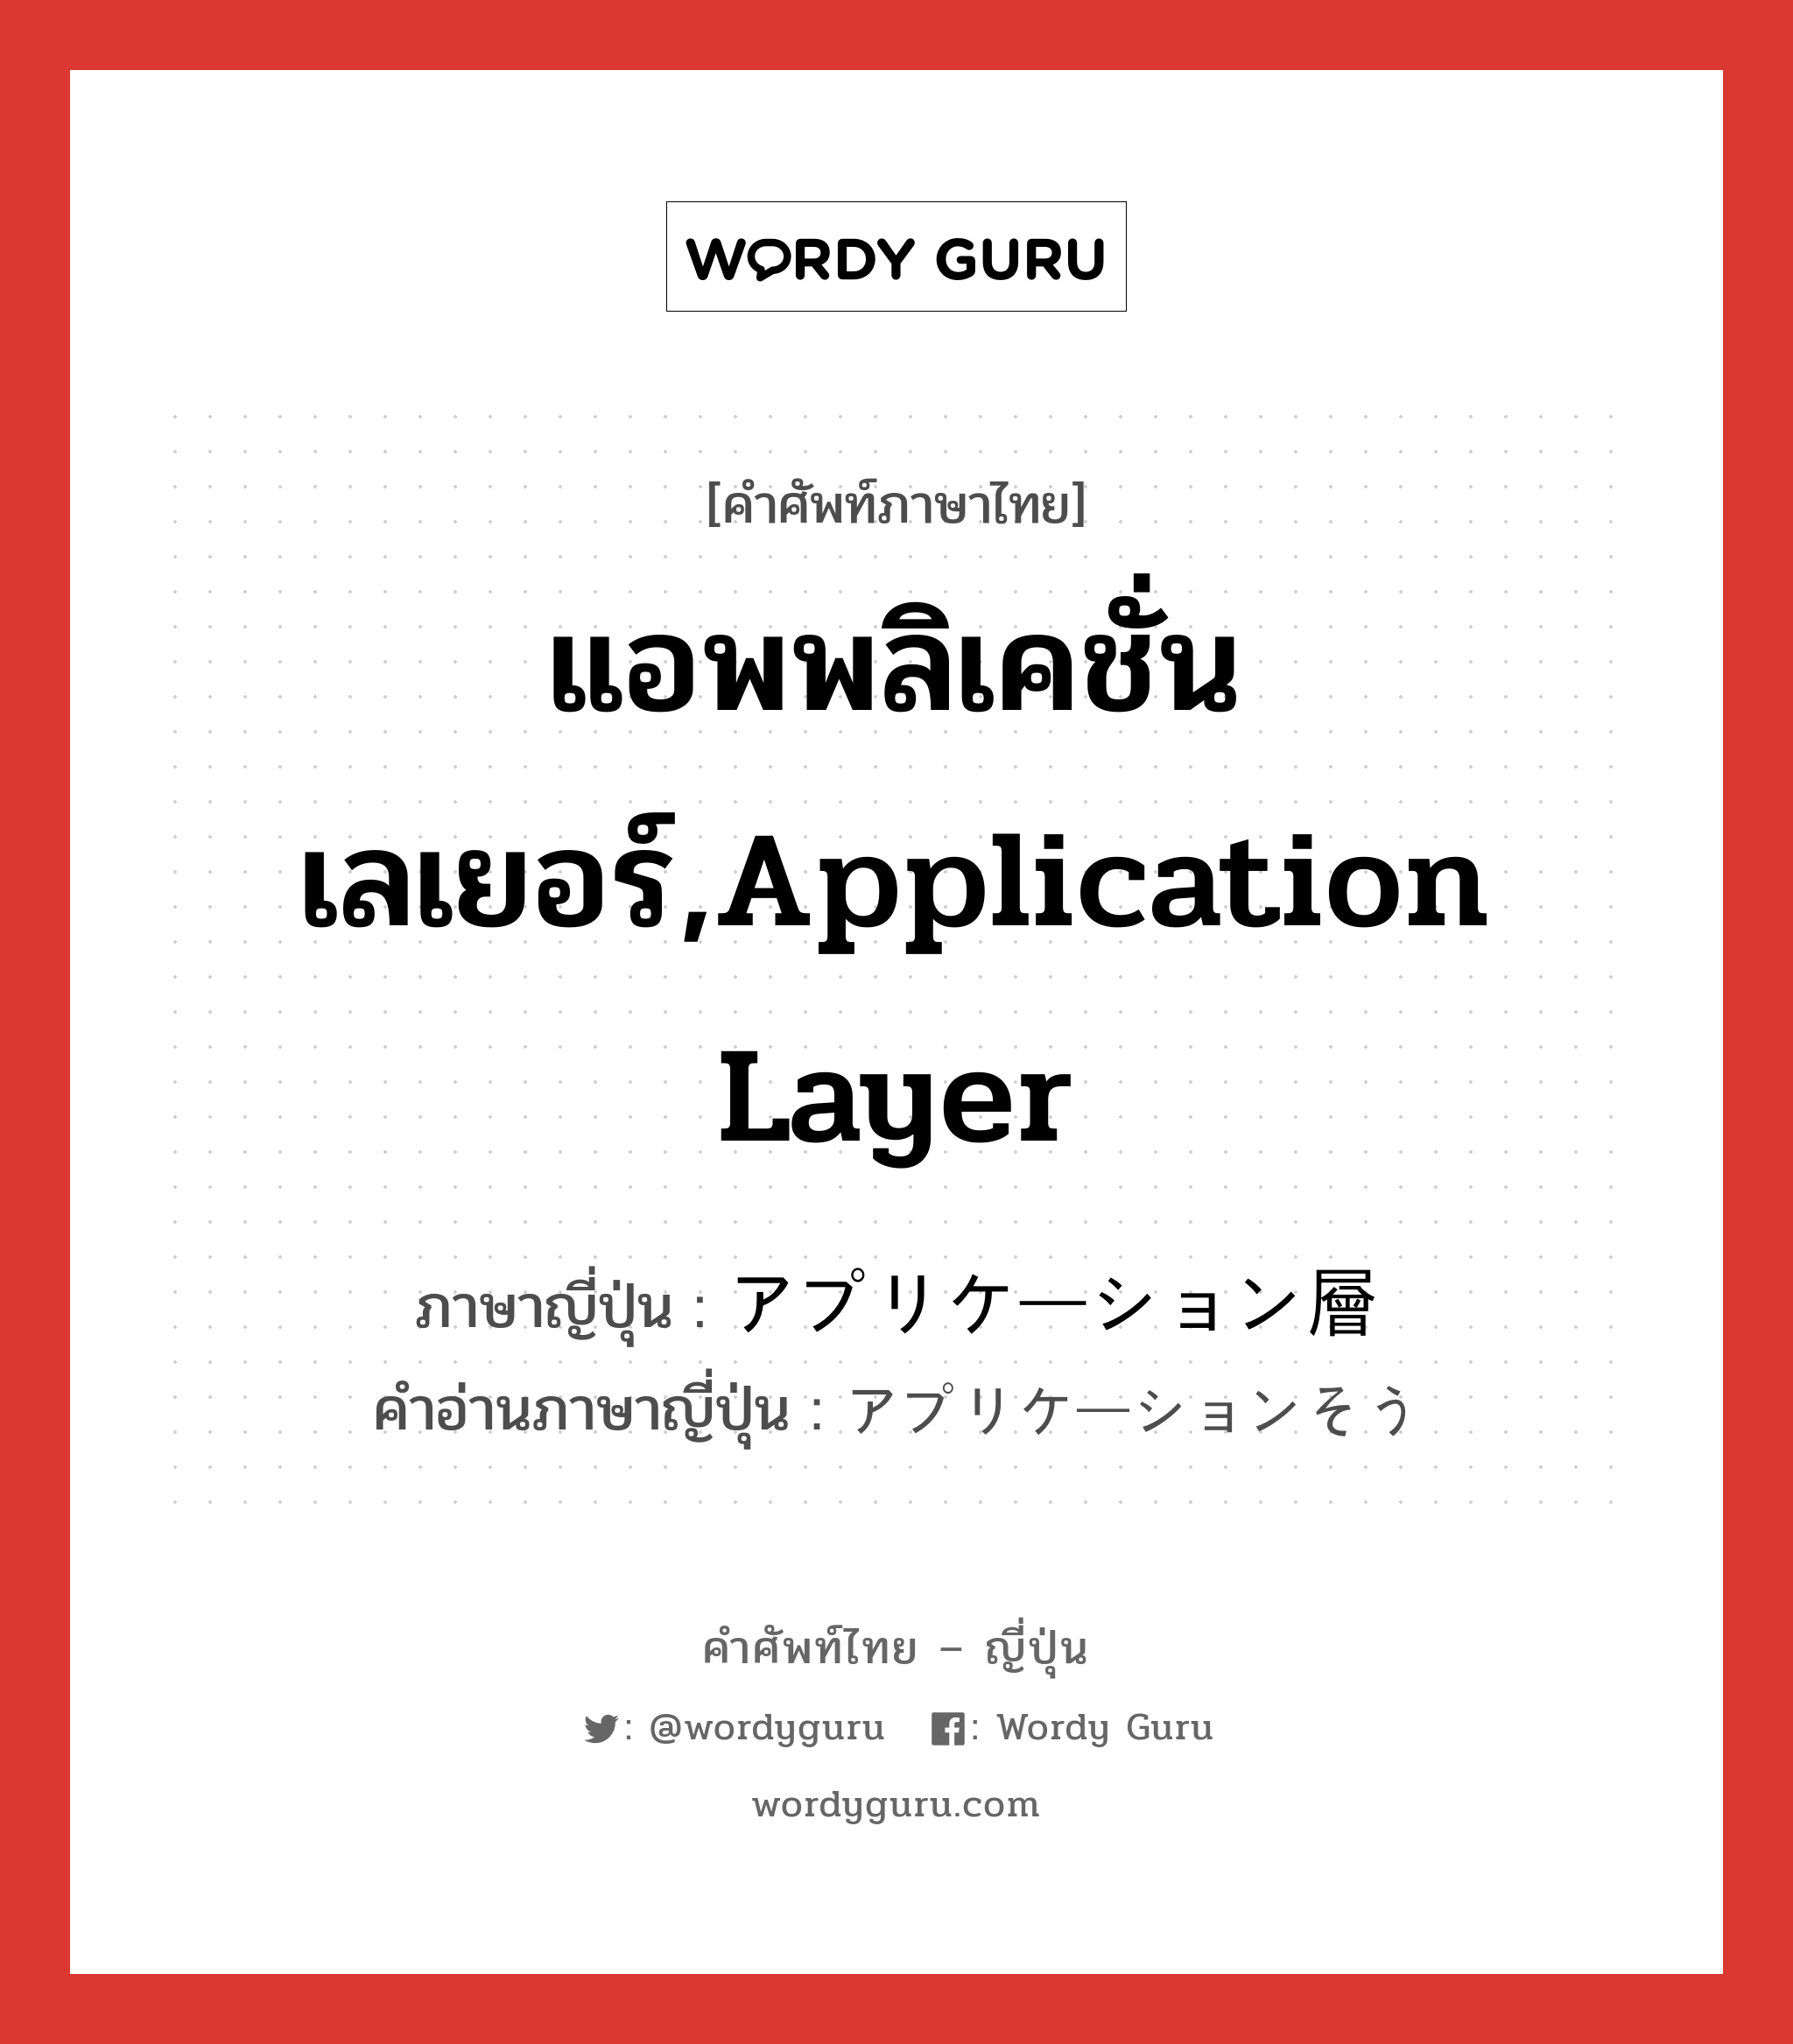 แอพพลิเคชั่นเลเยอร์,application layer ภาษาญี่ปุ่นคืออะไร, คำศัพท์ภาษาไทย - ญี่ปุ่น แอพพลิเคชั่นเลเยอร์,application layer ภาษาญี่ปุ่น アプリケーション層 คำอ่านภาษาญี่ปุ่น アプリケーションそう หมวด n หมวด n